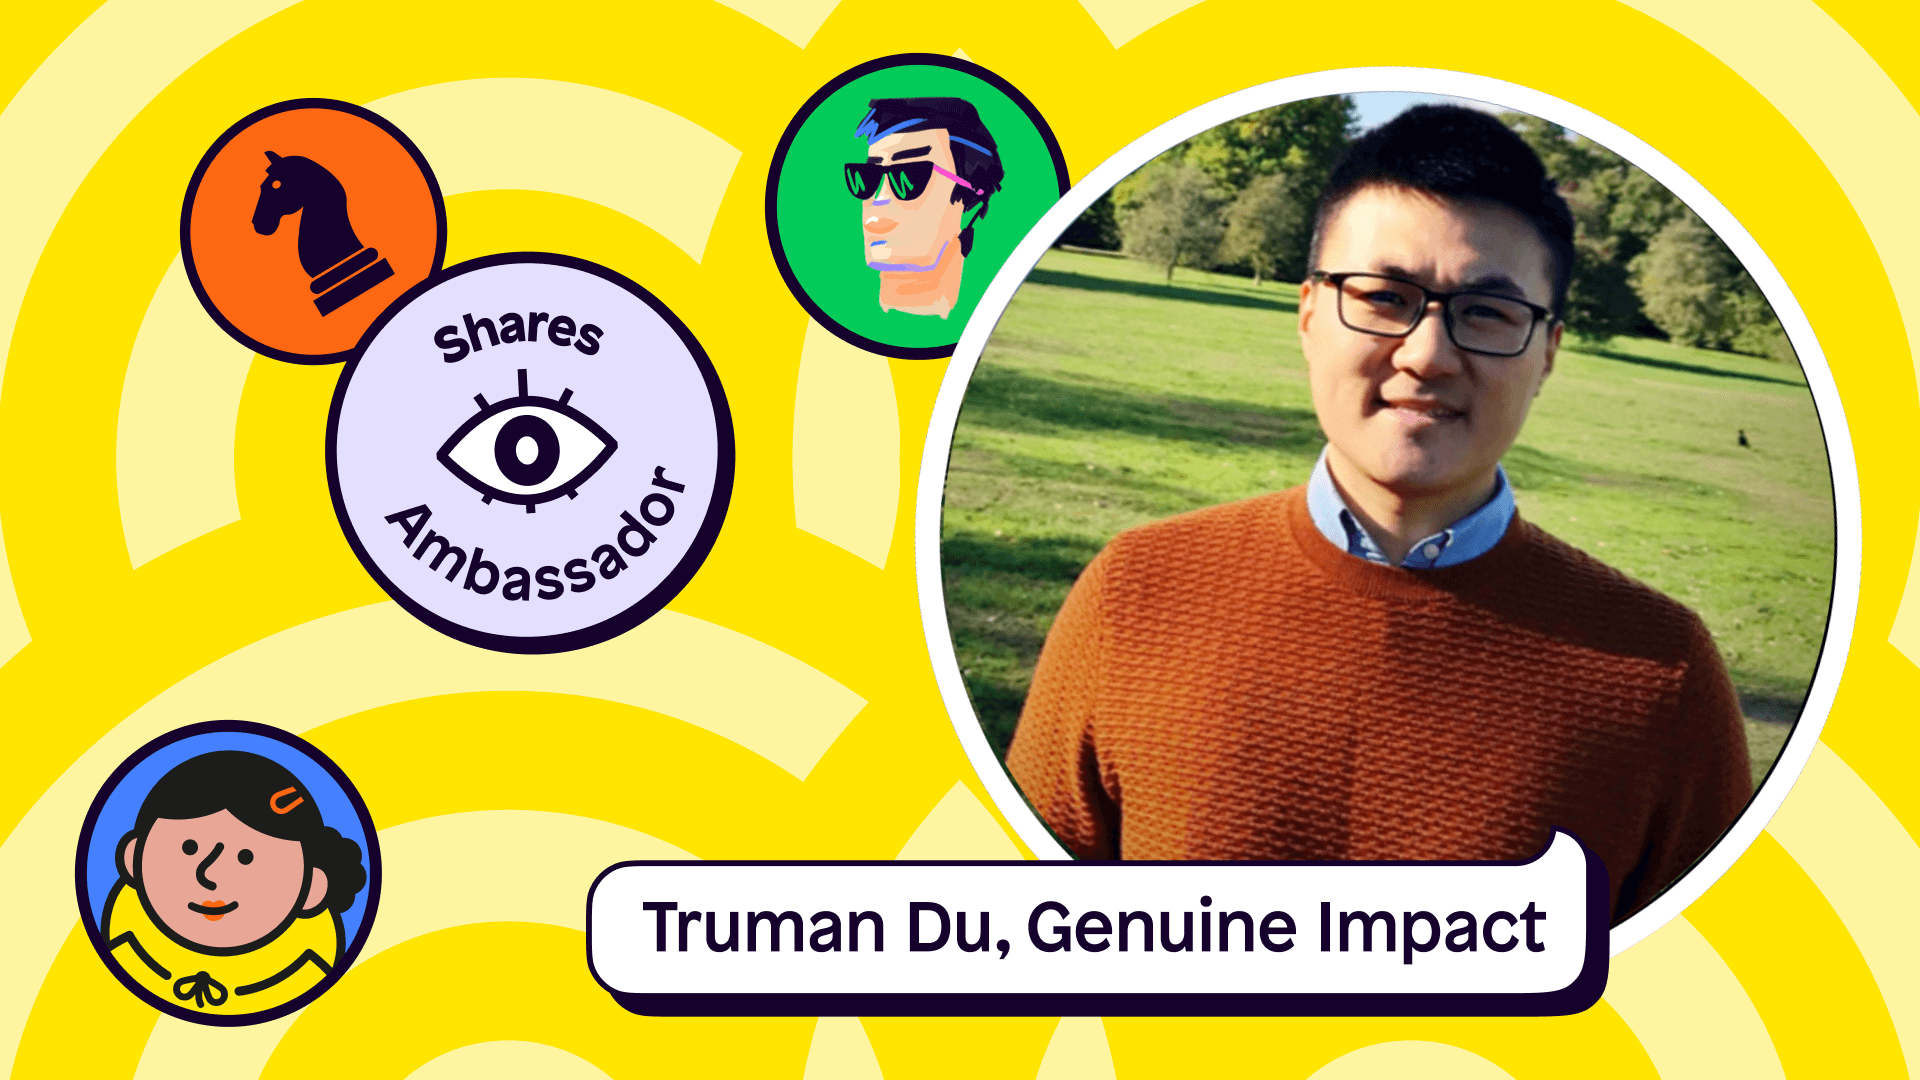 Truman Du, Genuine Impact and Shares